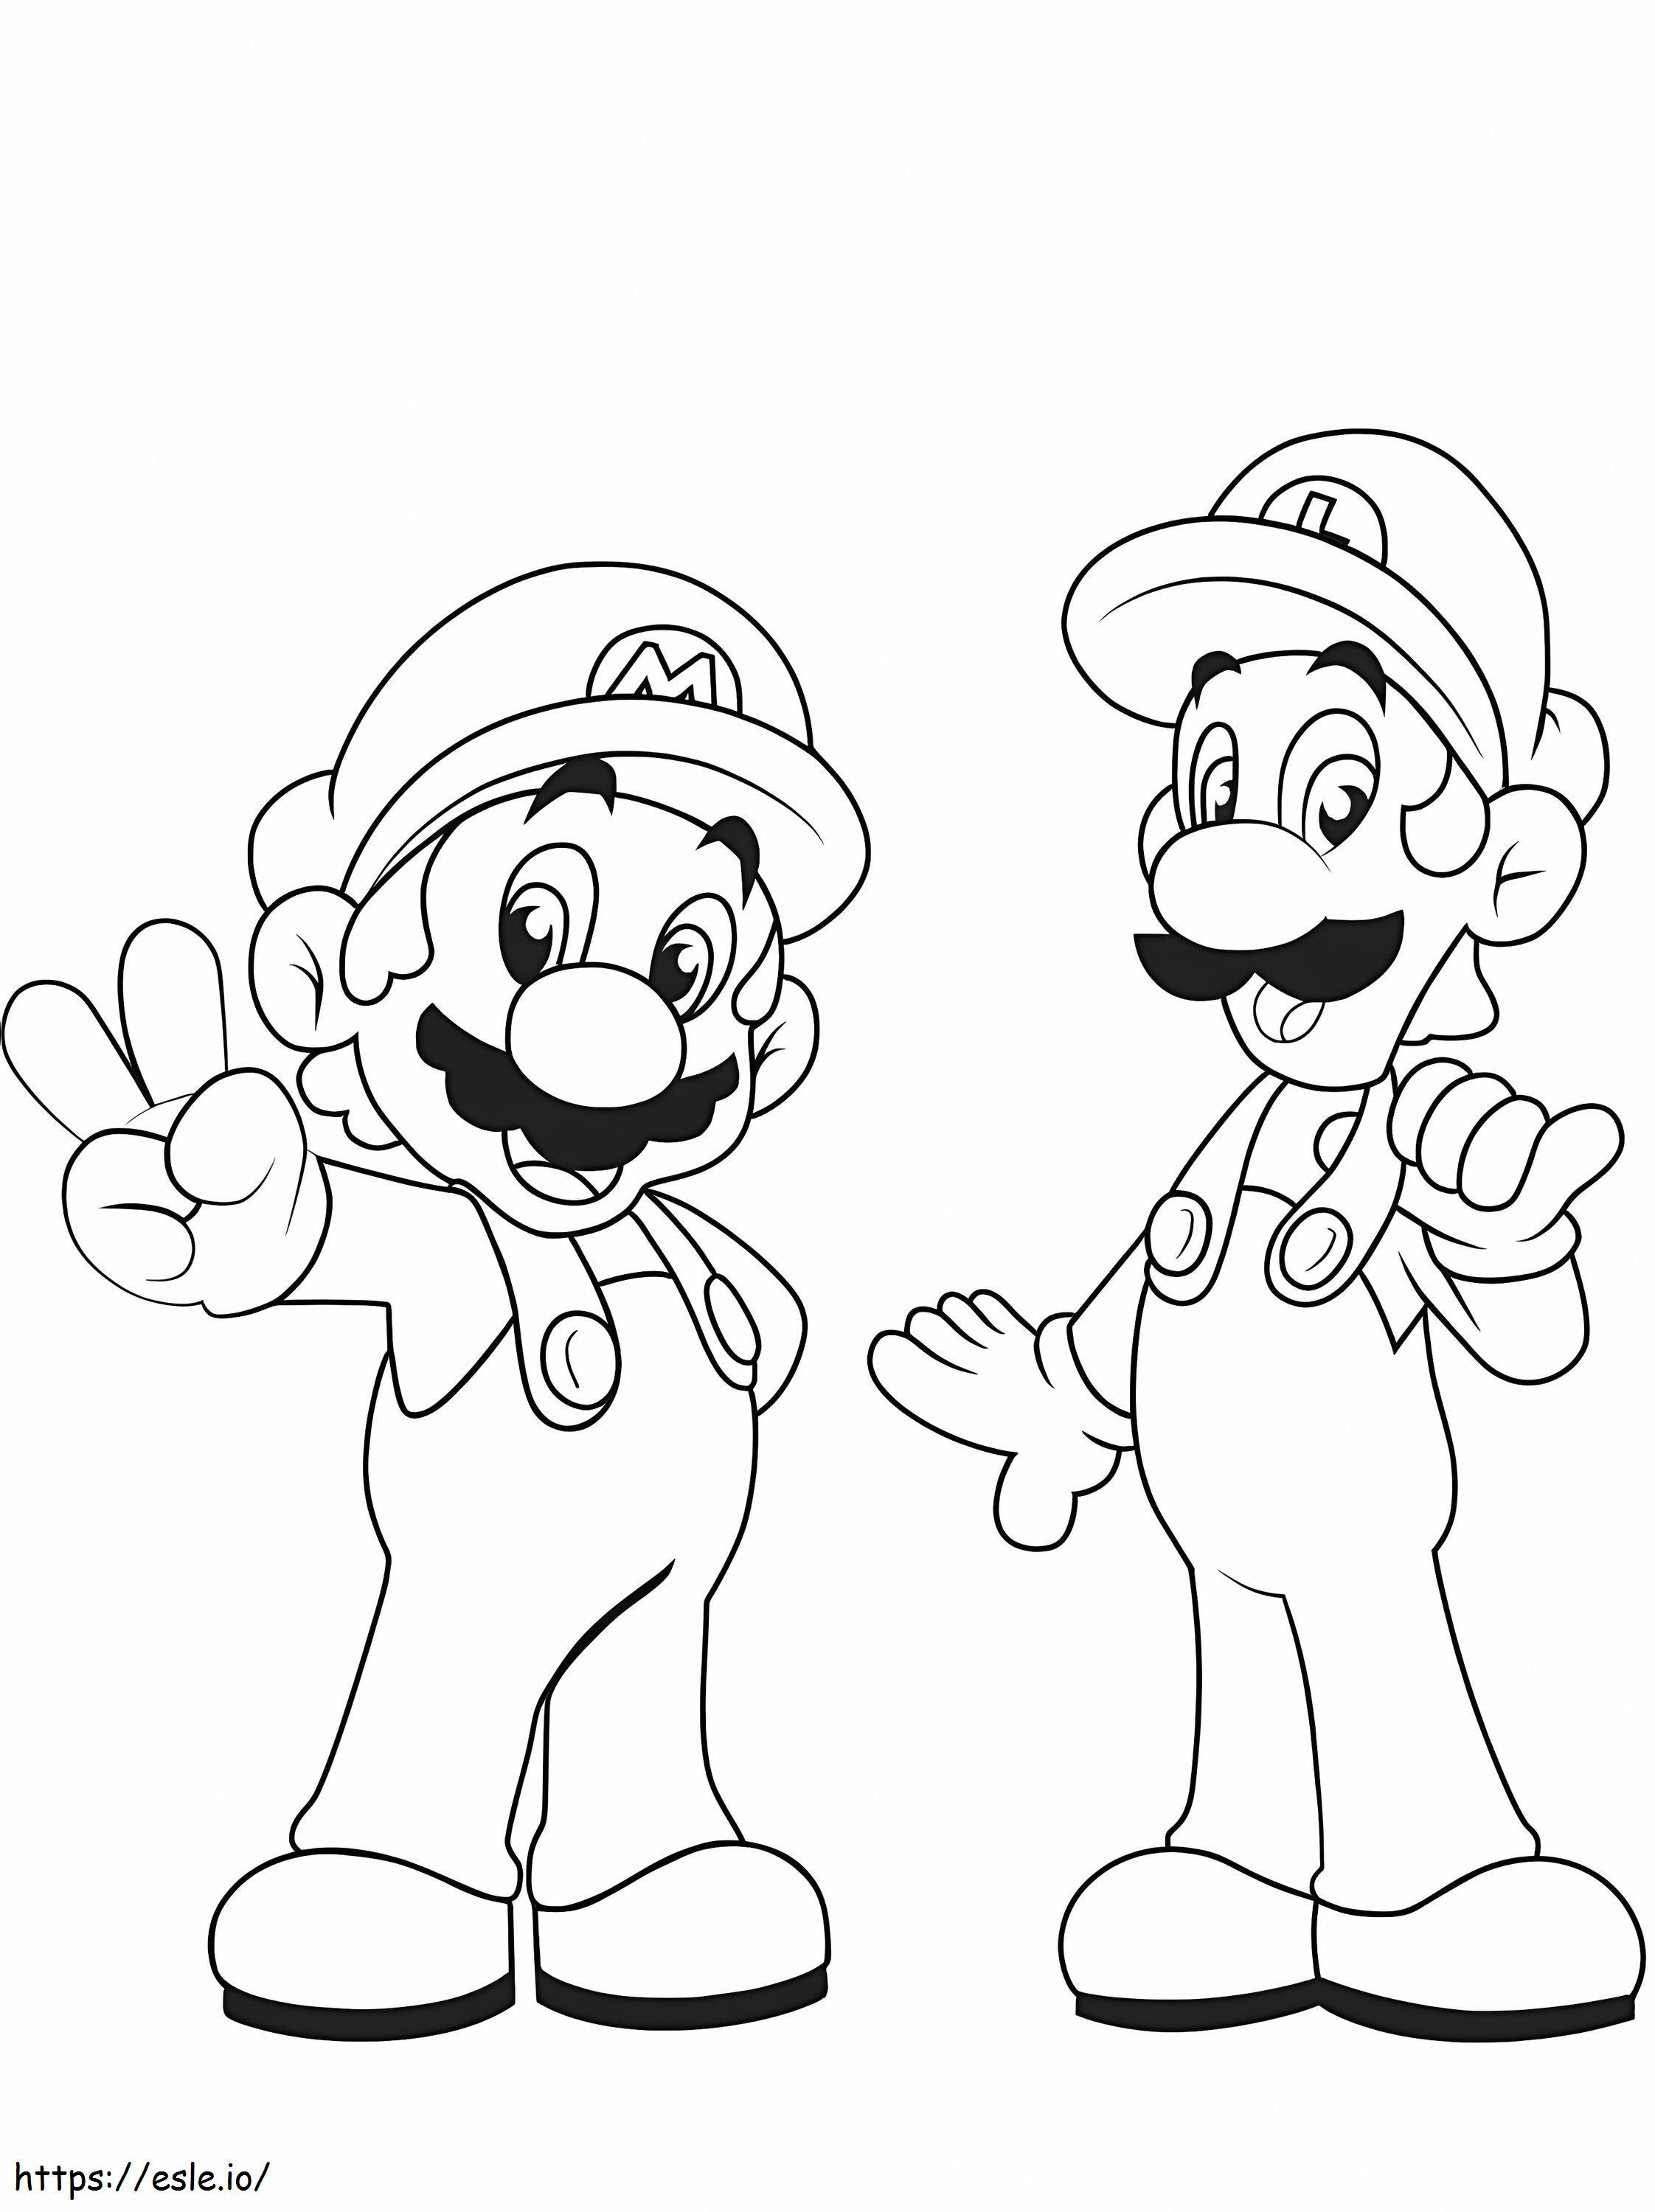 Mario ja Luigi värityskuva